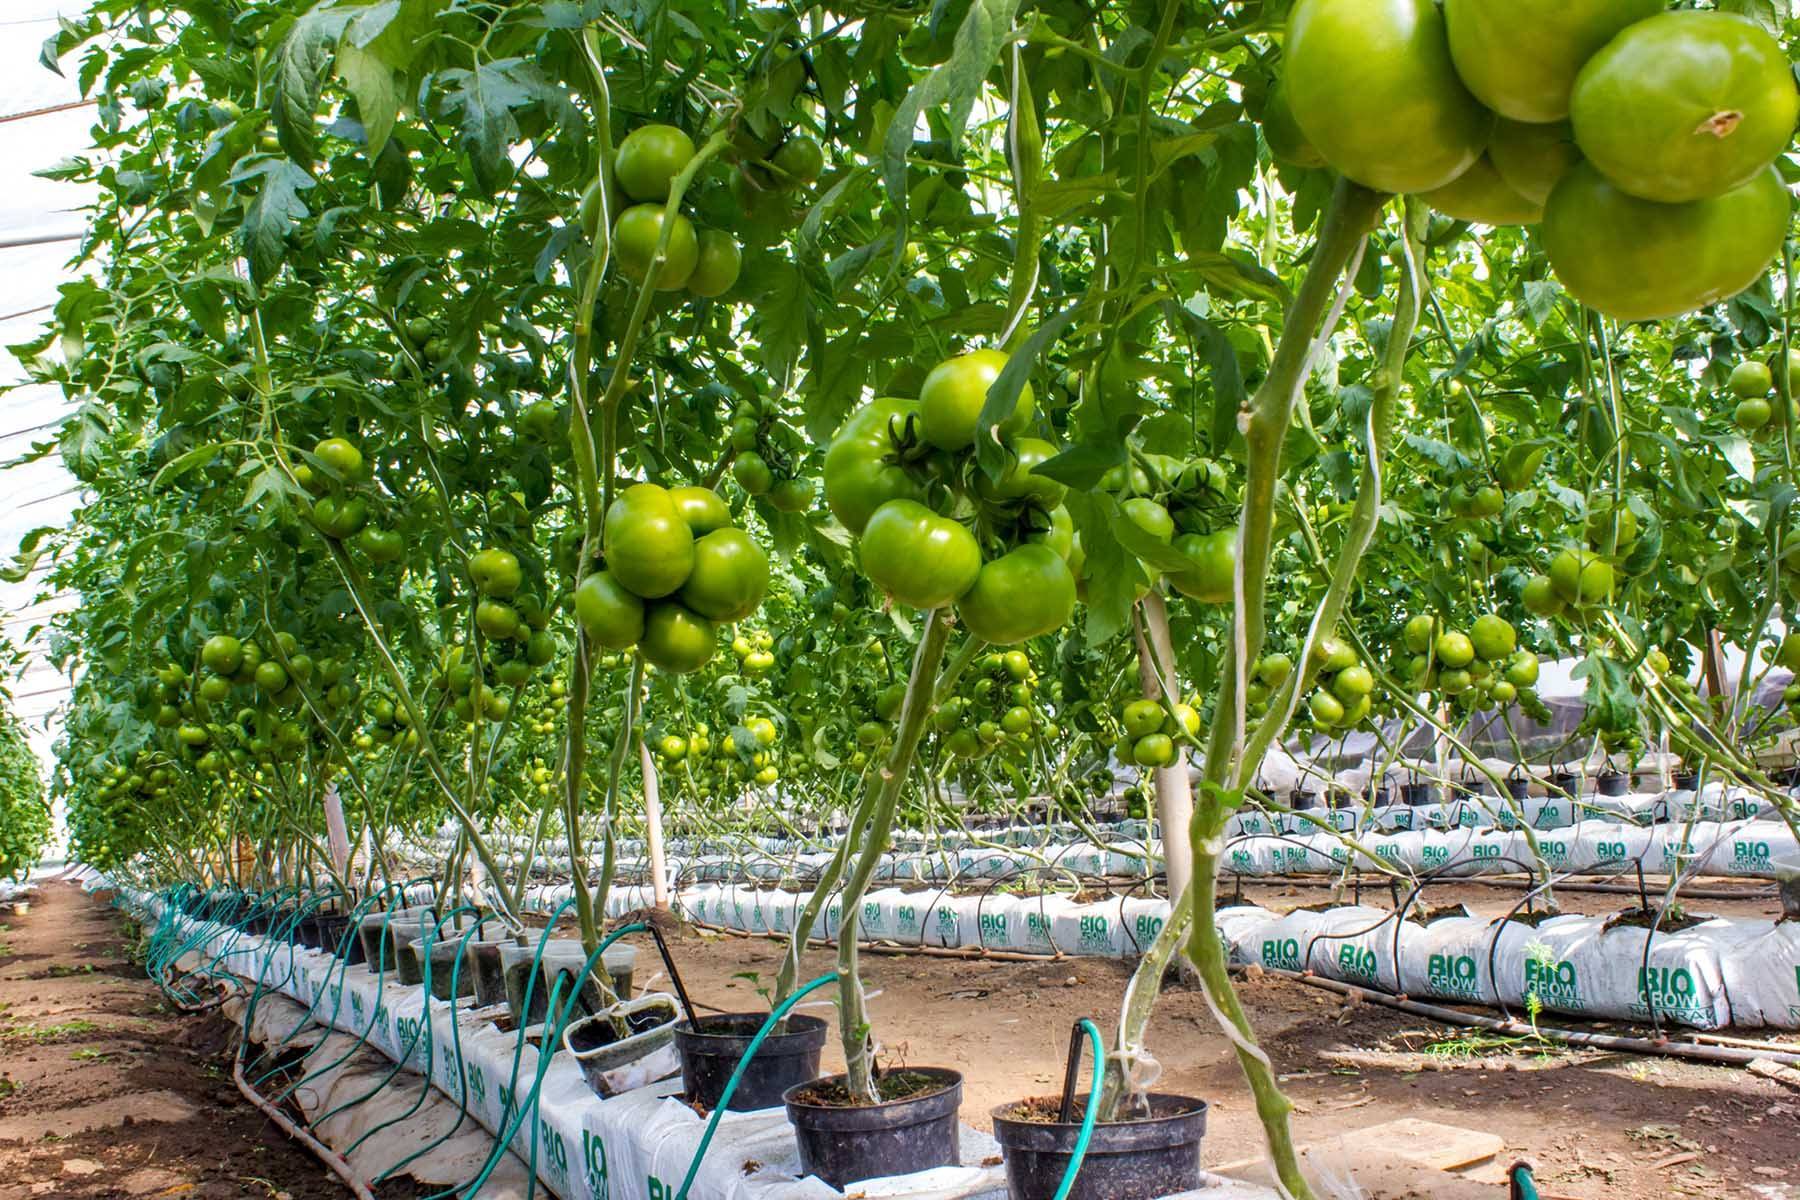 Как выращивать помидоры на гидропонике в домашних условиях